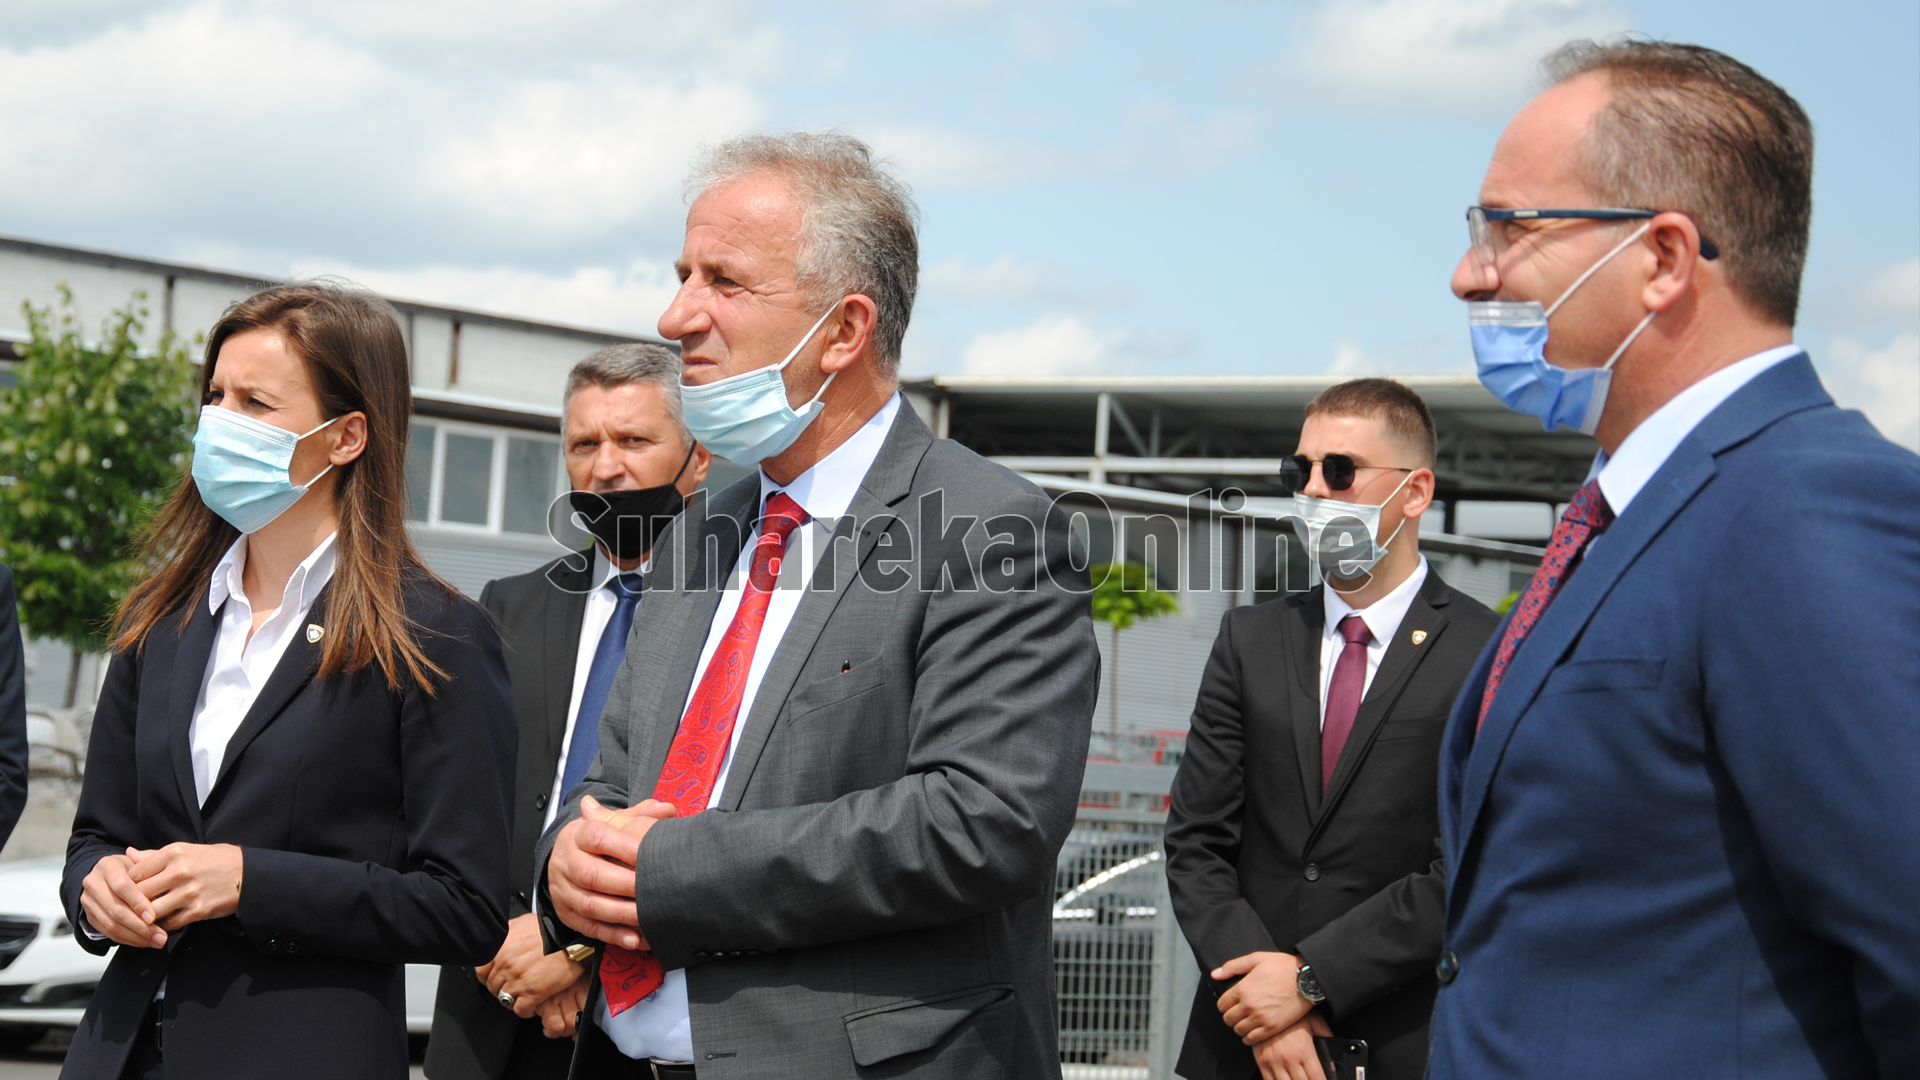 Zëvendës Kryeministrja Balaj dhe Ministri Krasniqi vizituan sot Suharekën